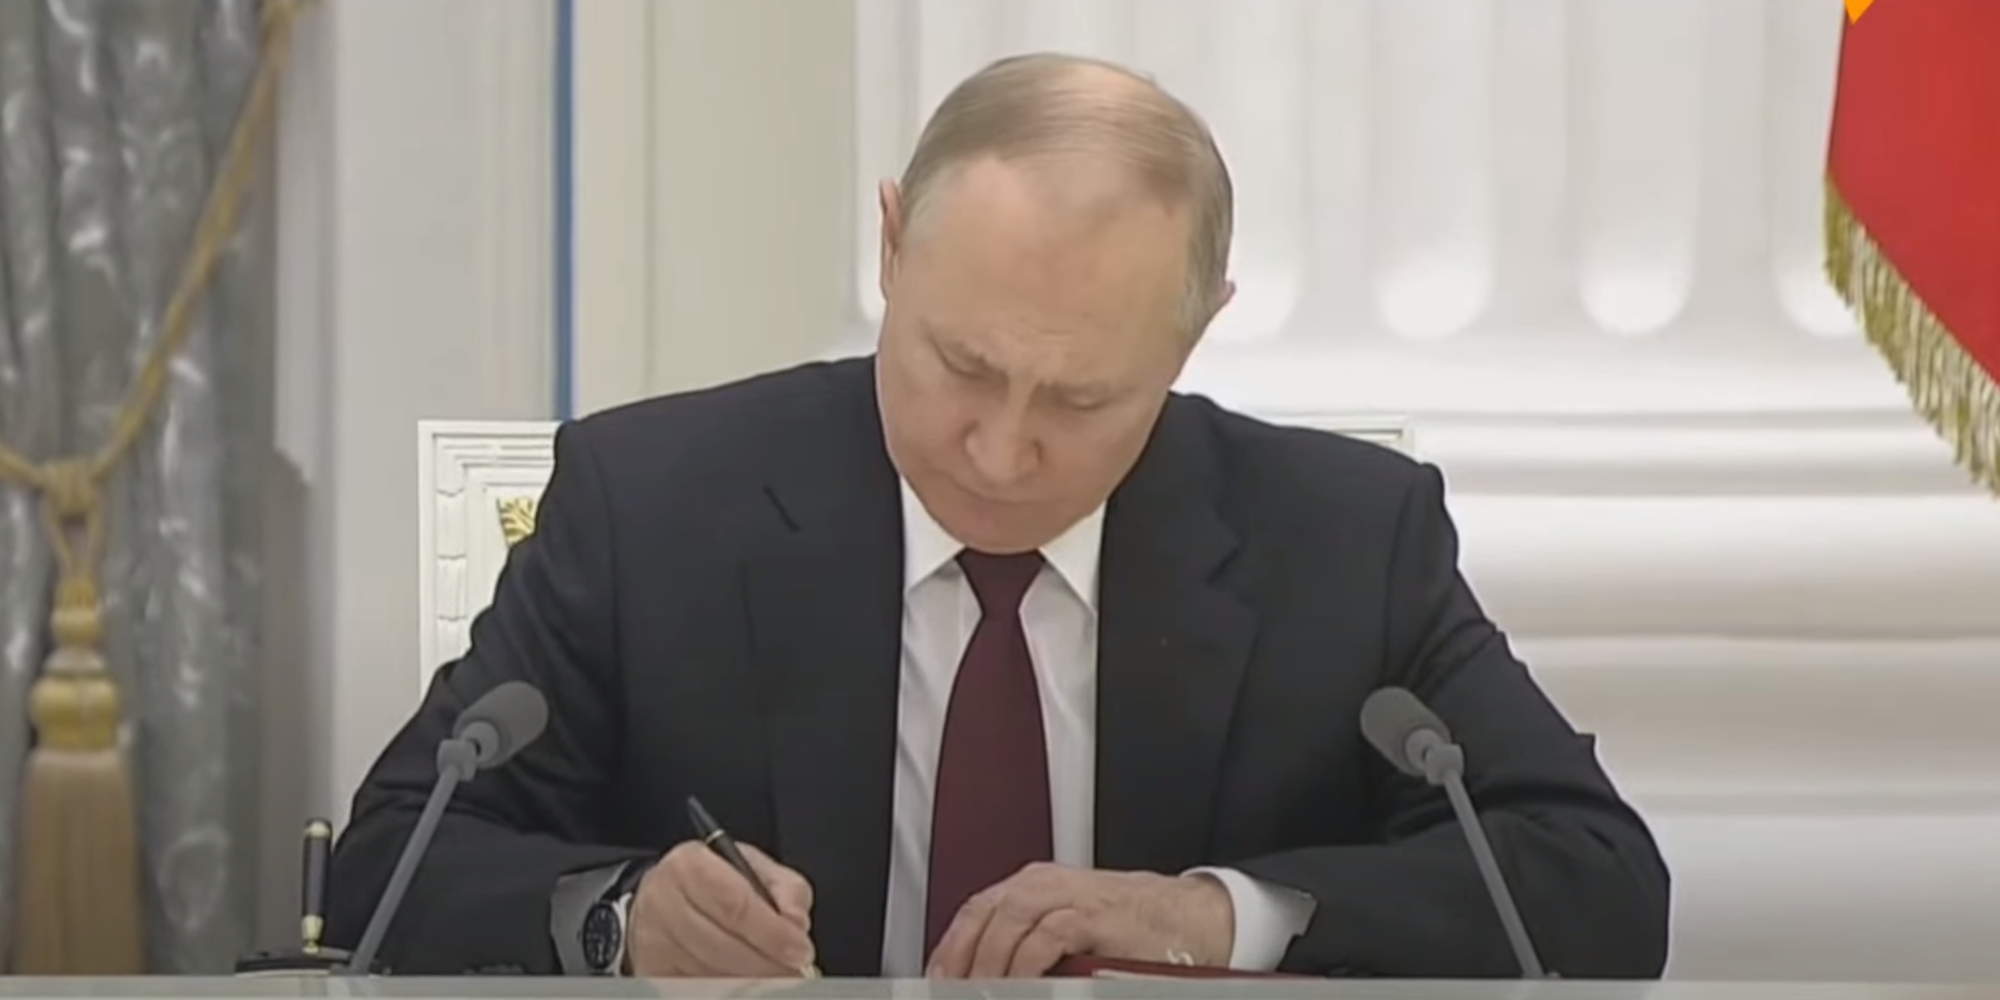 Ο Πούτιν υπέγραψε την ανεξαρτησία των φιλορωσικών περιοχών στην ανατολική Ουκρανία